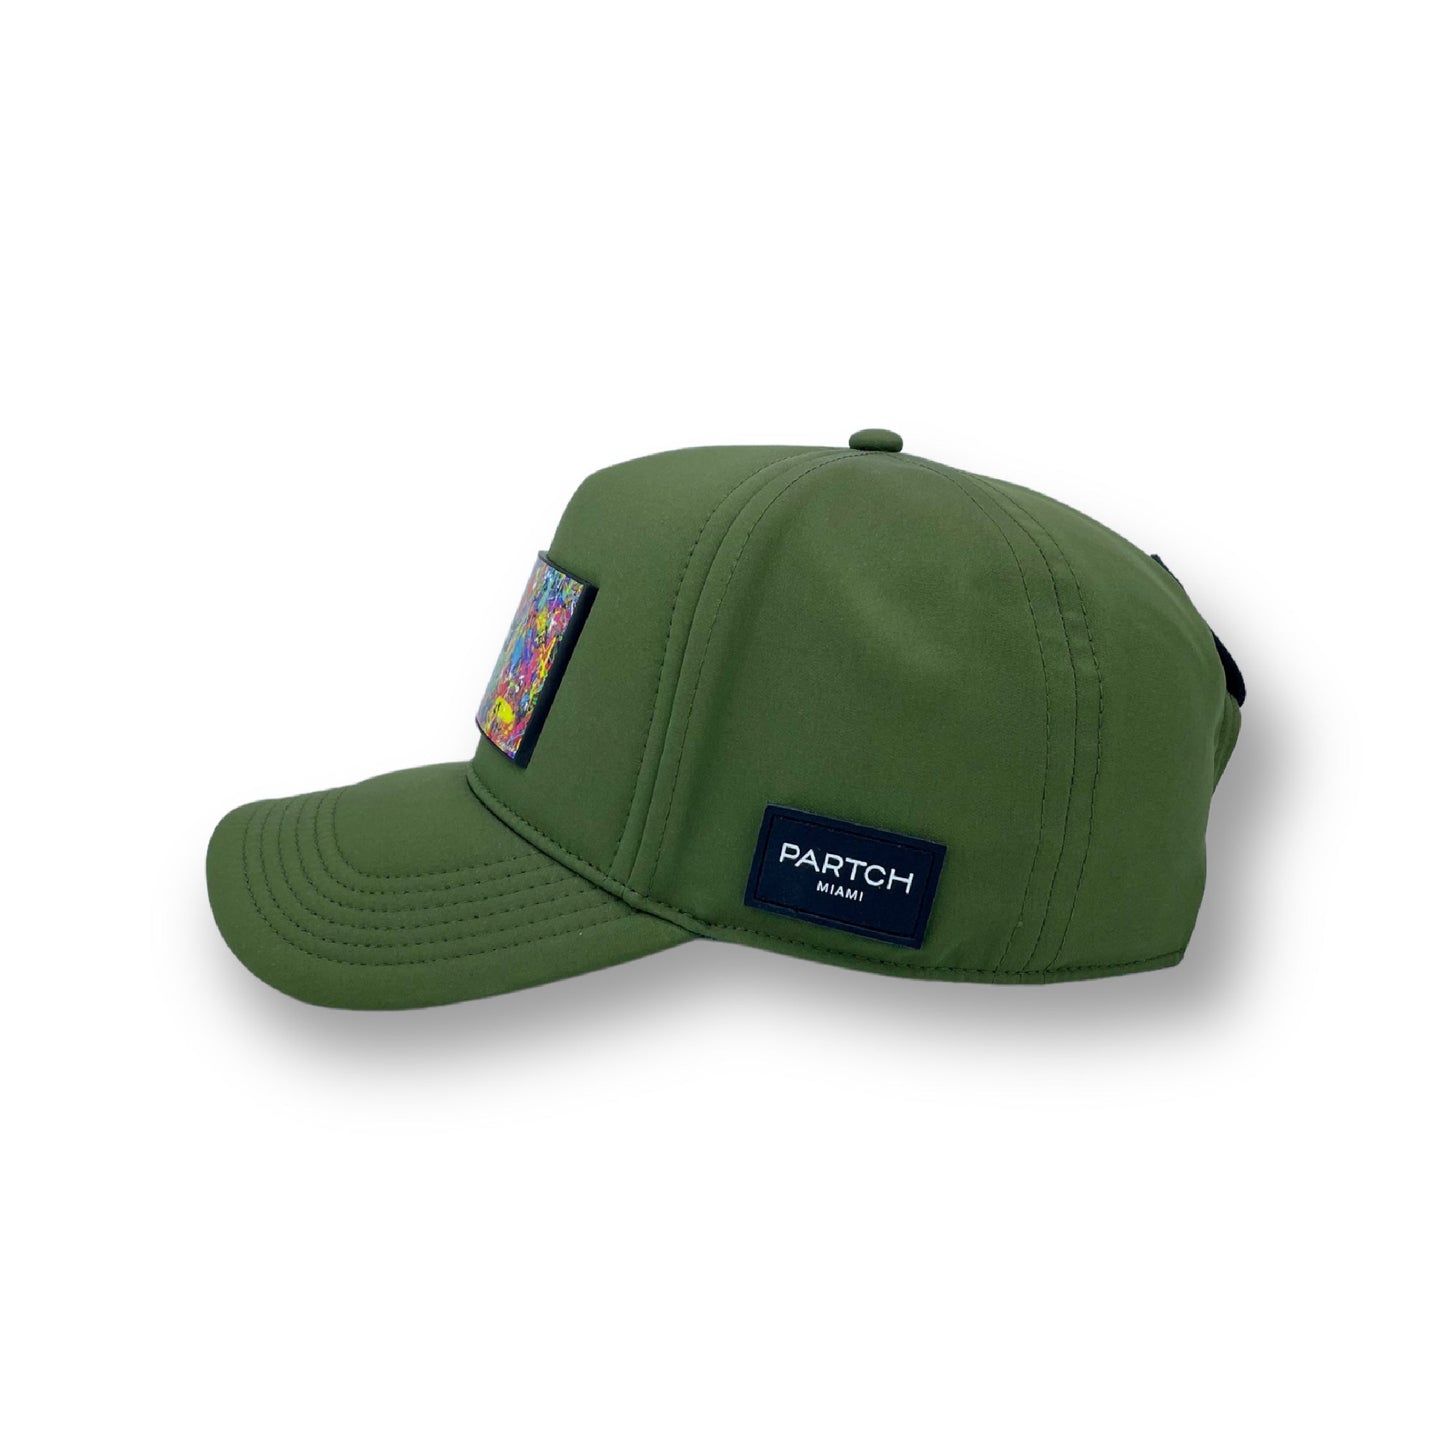 Partch Green kaki trucker hat spandex, leather, cotton, PARTCH-Clip Art concept